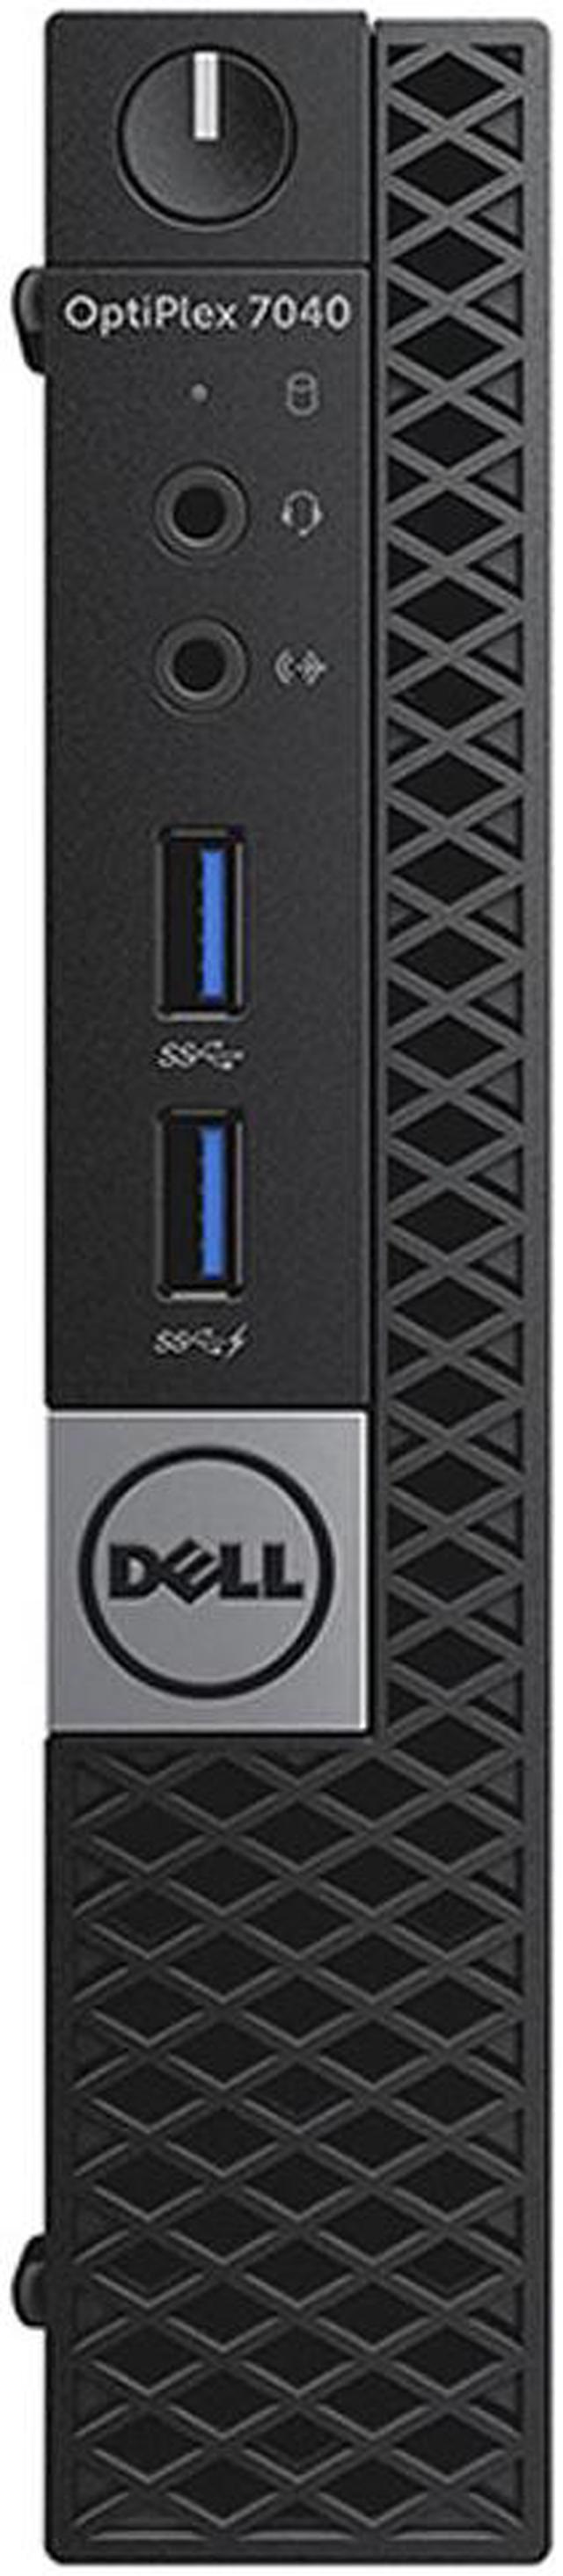 Dell OptiPlex 7040 Micro Workstation - Intel Core i3-6100T 3.2GHz 2 Core  Processor